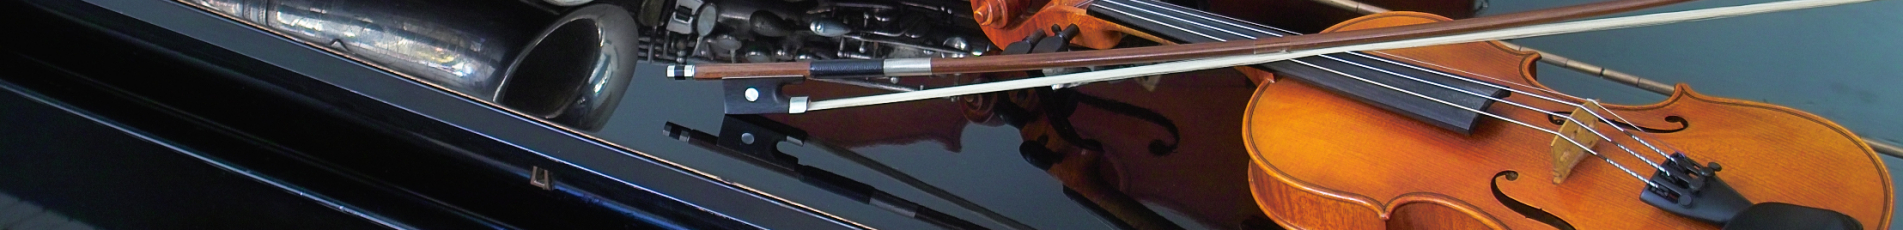 Verschiedene Instrumente auf einem Steinway & Sons - Flügel. Eine Violine, eine Viola und ein Saxophon sind aufgestellt.